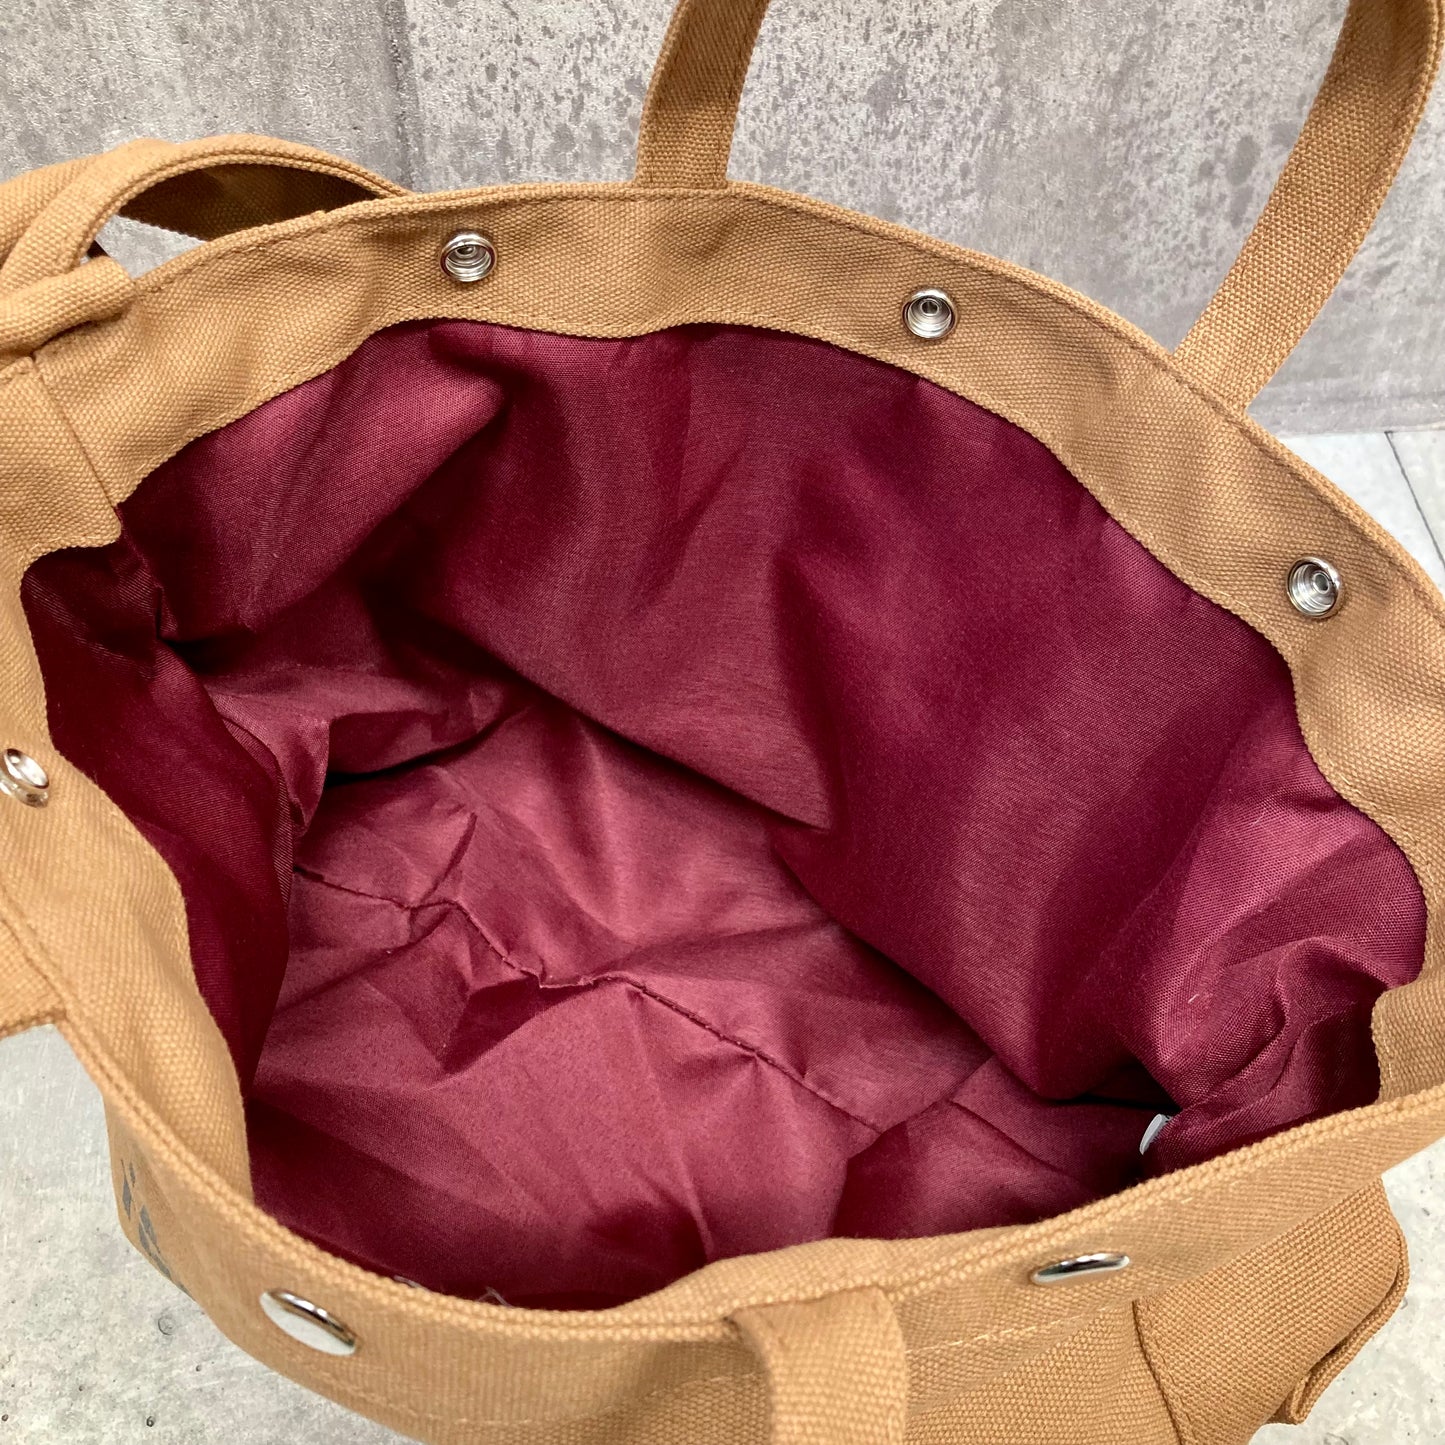 キャンバストートバッグ ロゴプリント 外側ポケット ショルダー付き ハンドバッグ 通学バッグ